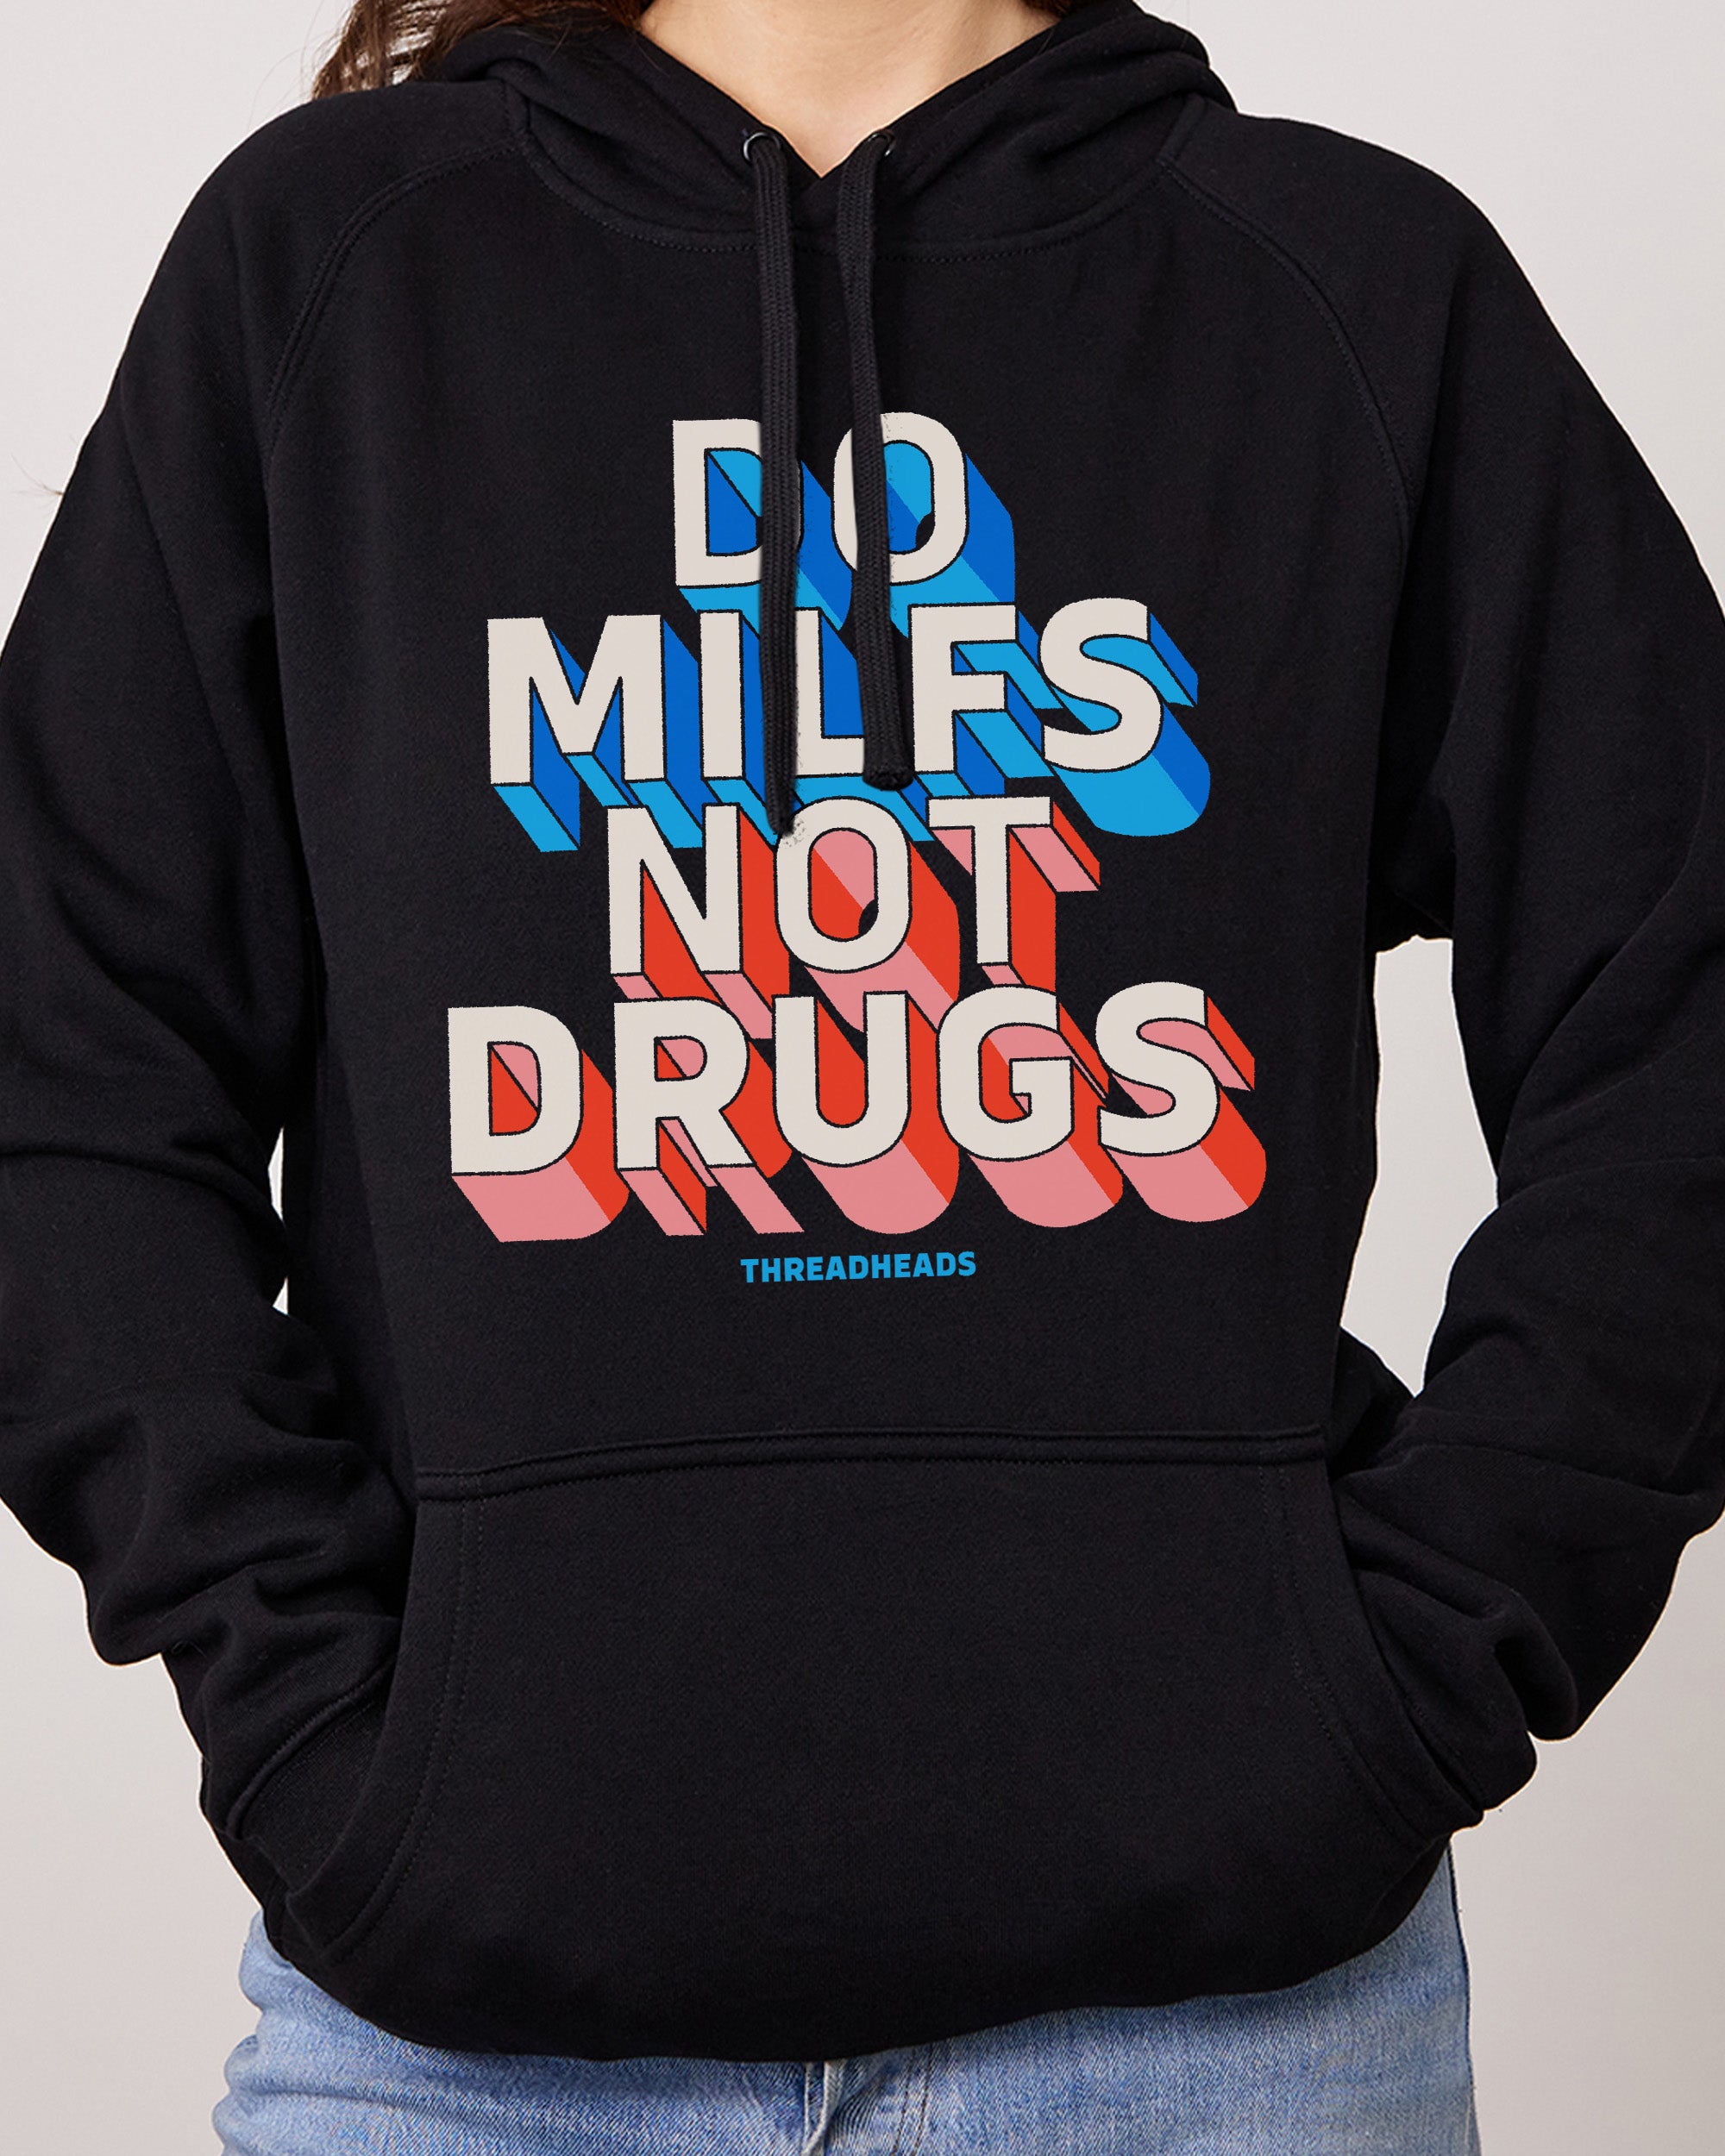 Do MILFs Not Drugs Hoodie